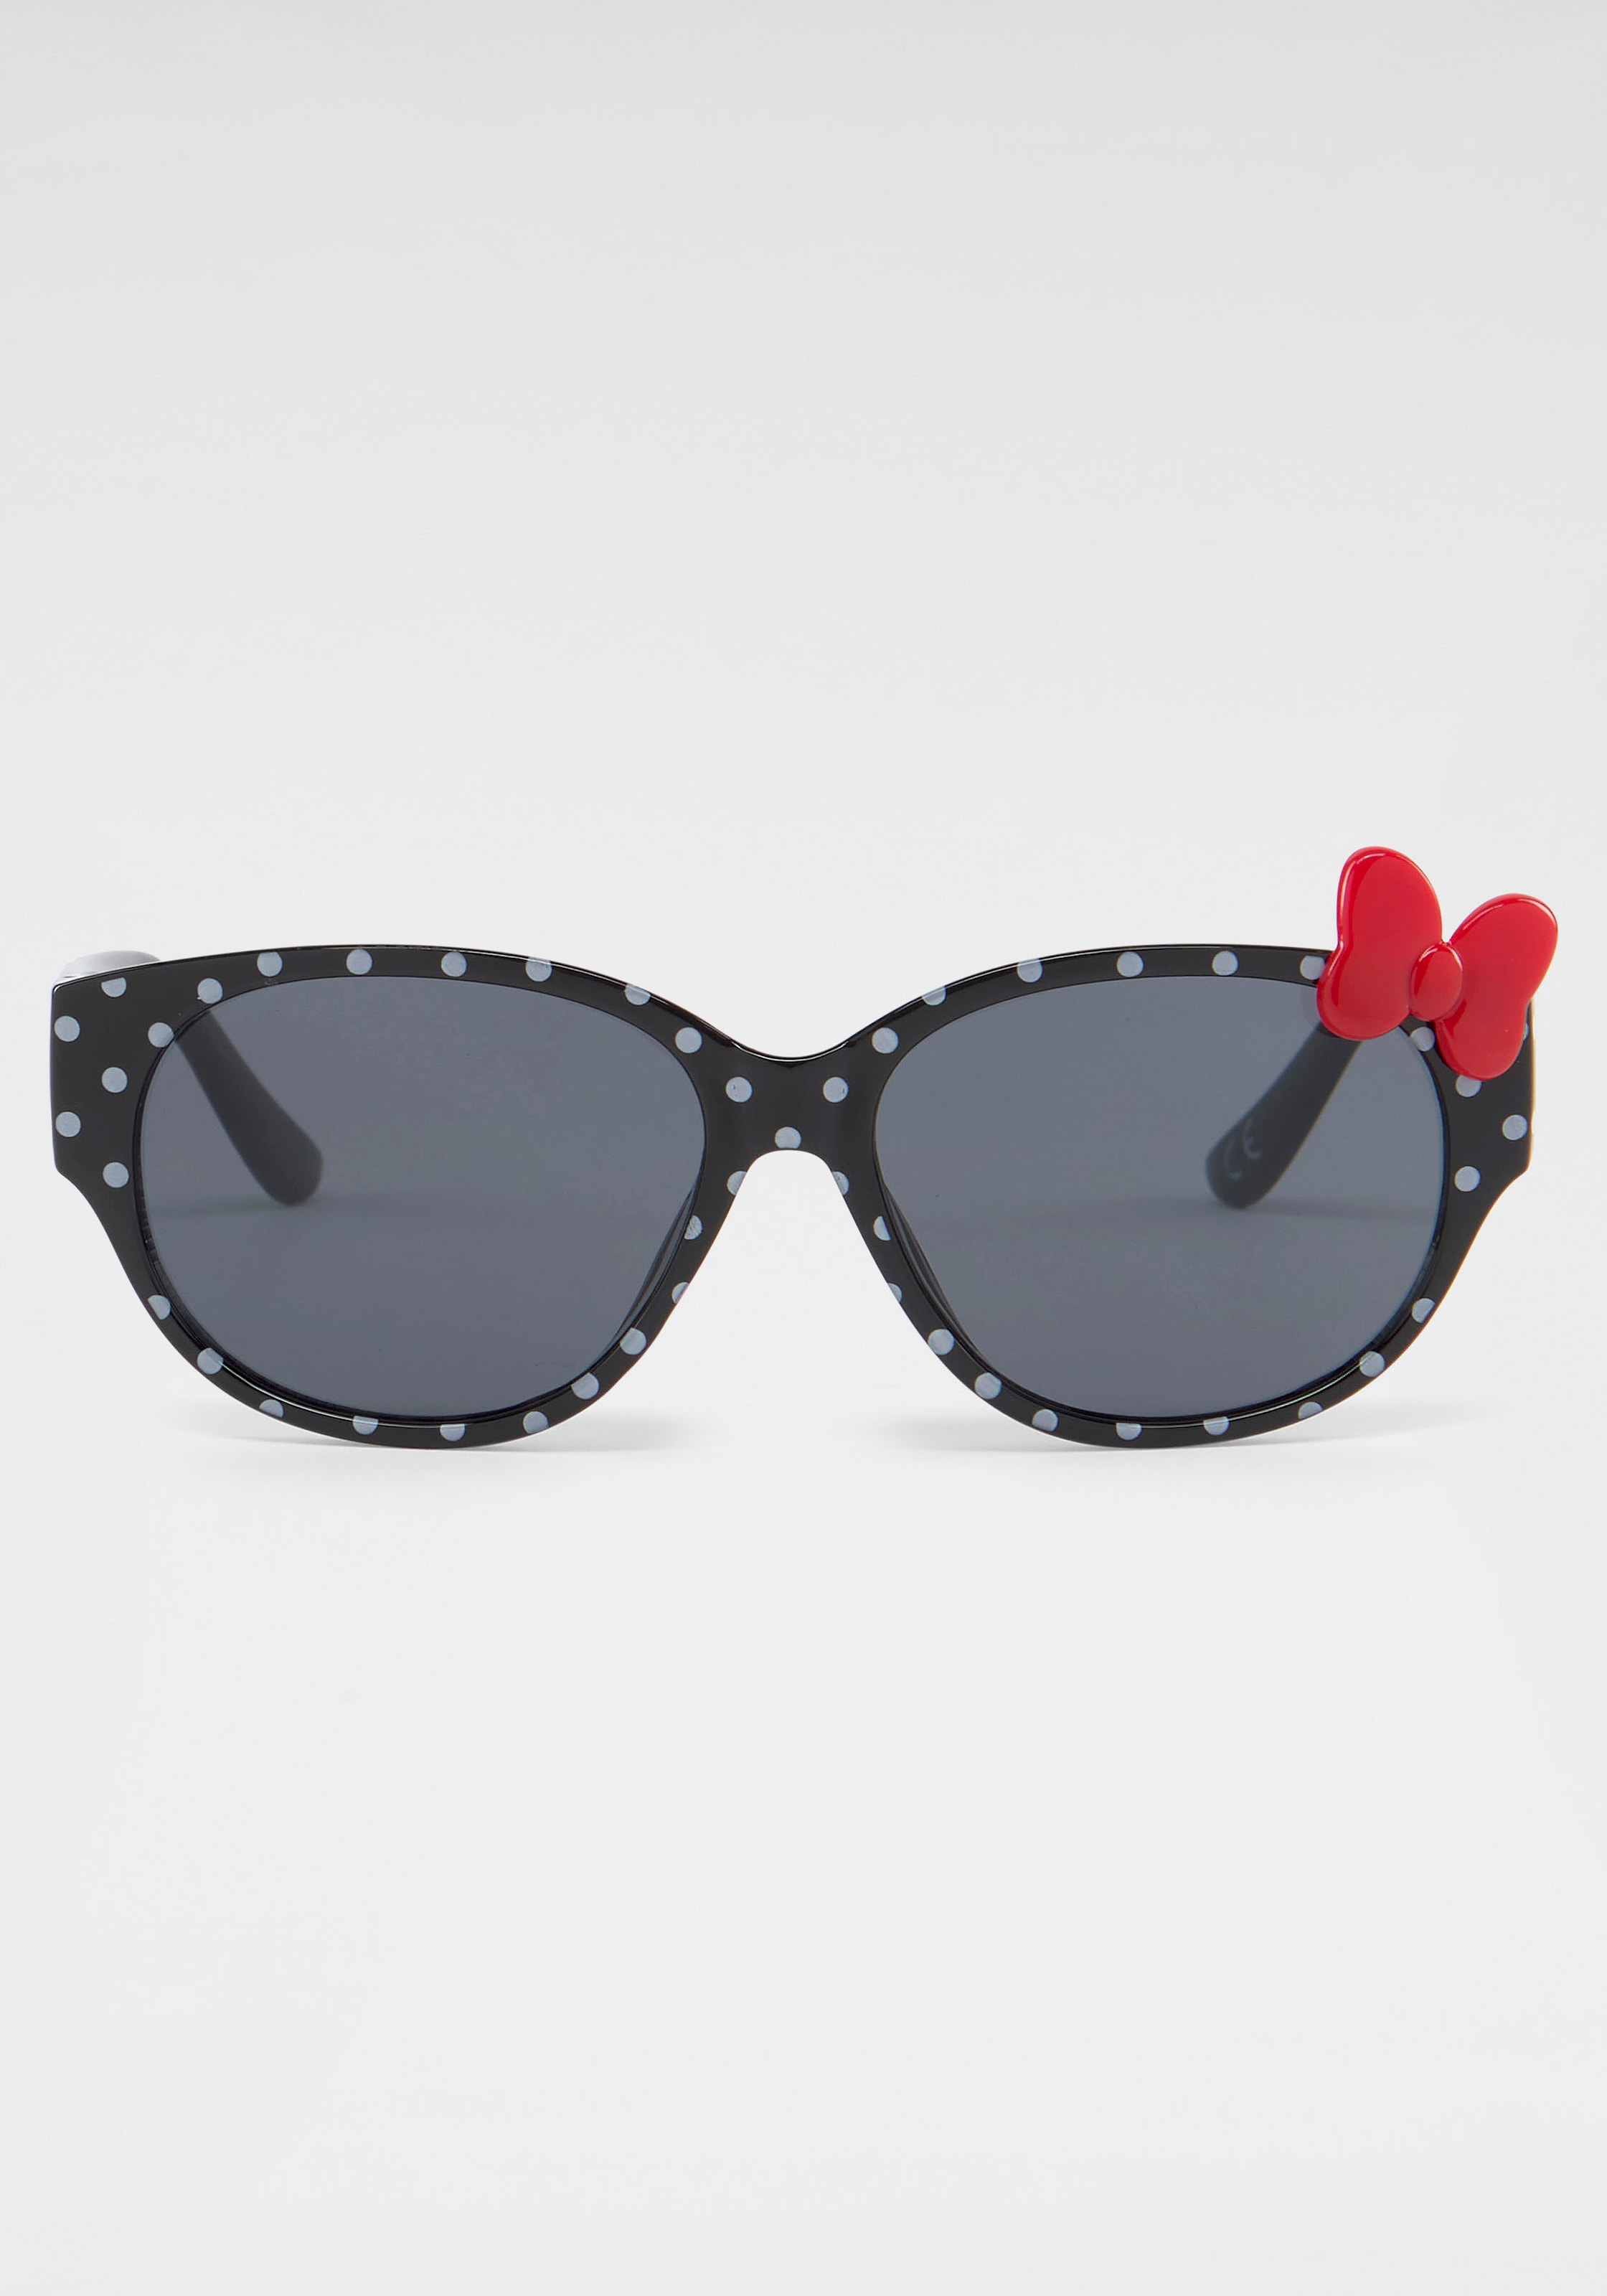 Schleifen-Applikation kaufen PRIMETTA Eyewear Sonnenbrille, online